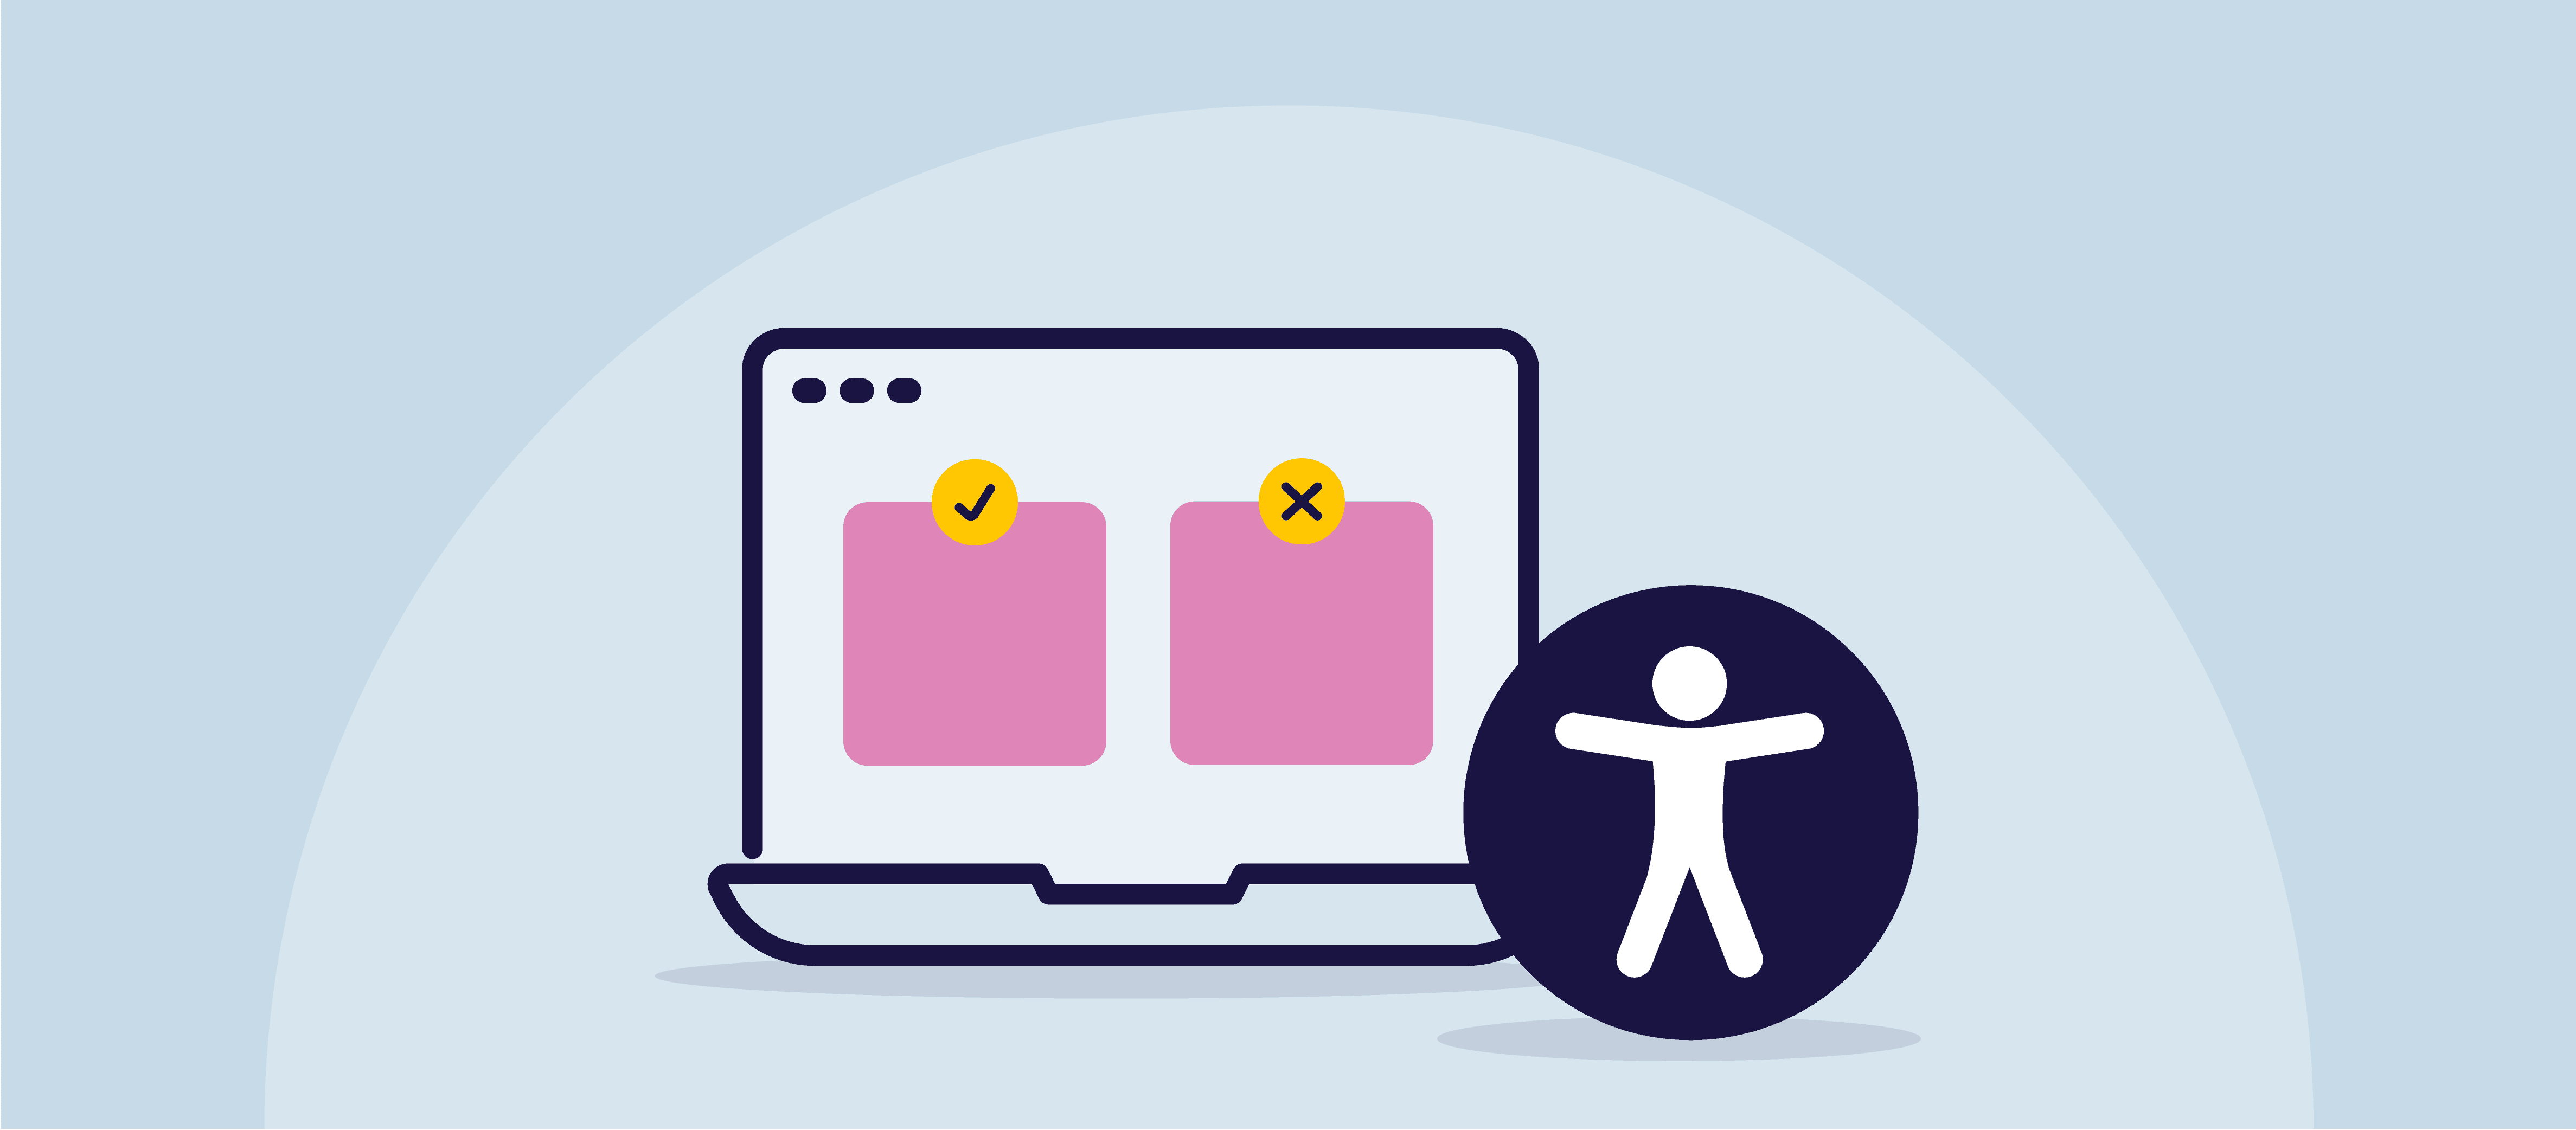 Eine Illustration eines Computerbildschirms mit zwei rosafarbenen Quadraten auf dem Bildschirm, die ein Meme darstellen. Das eine ist mit einem Häkchen versehen, das andere mit einem X. Auf der rechten Seite des Bildschirms befindet sich das Symbol für allgemeine Zugänglichkeit.